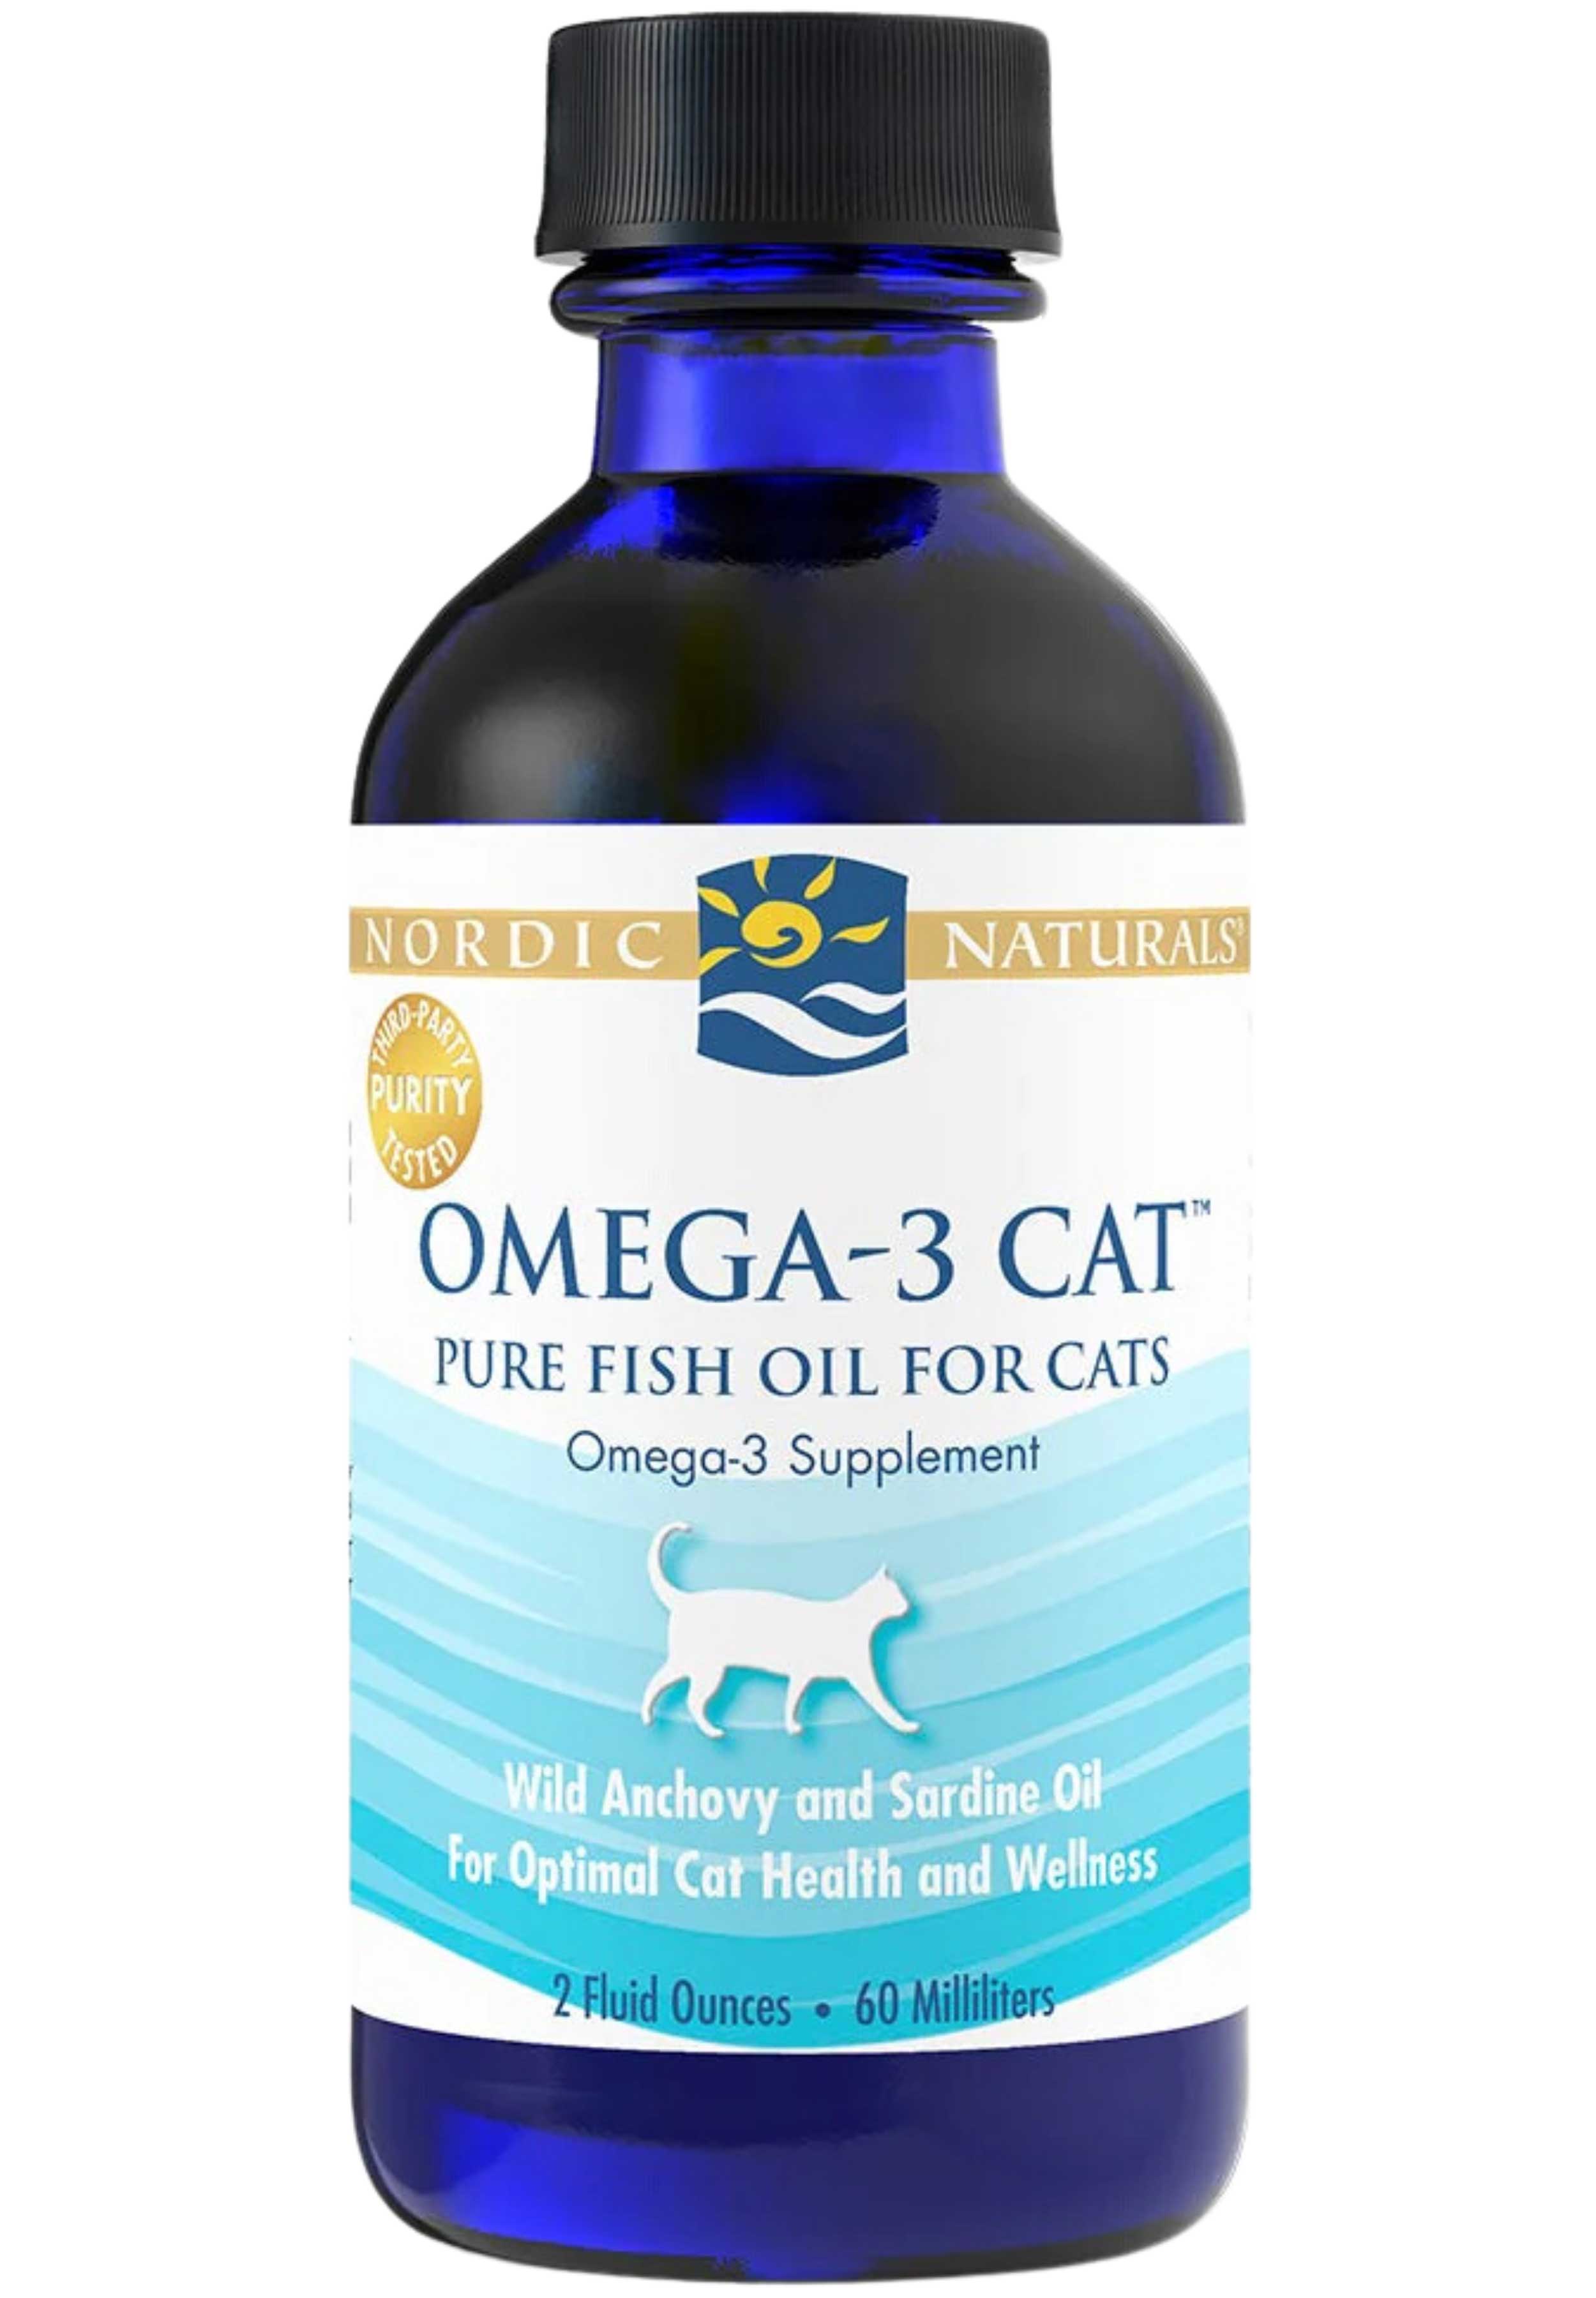 Nordic Naturals Omega-3 Cat